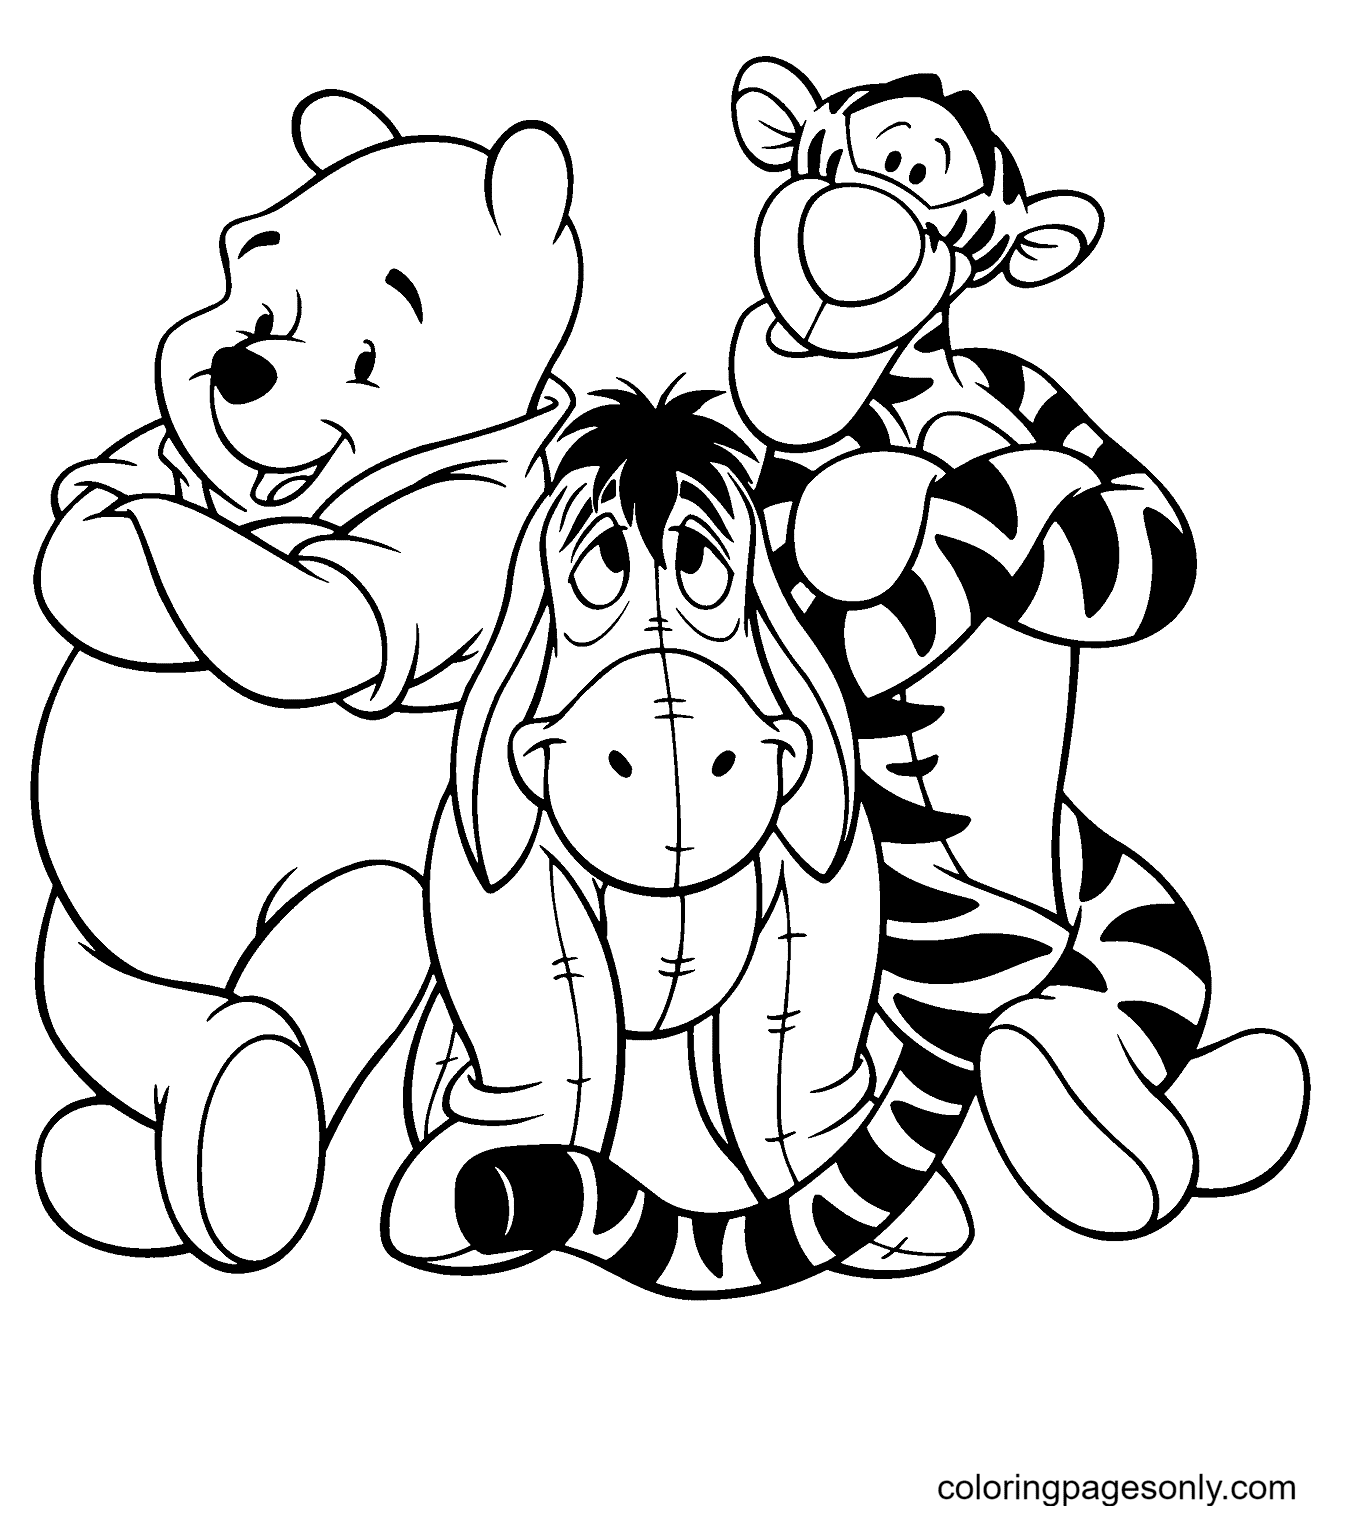 Pooh und I-Ah mit Tigger aus Winnie The Pooh